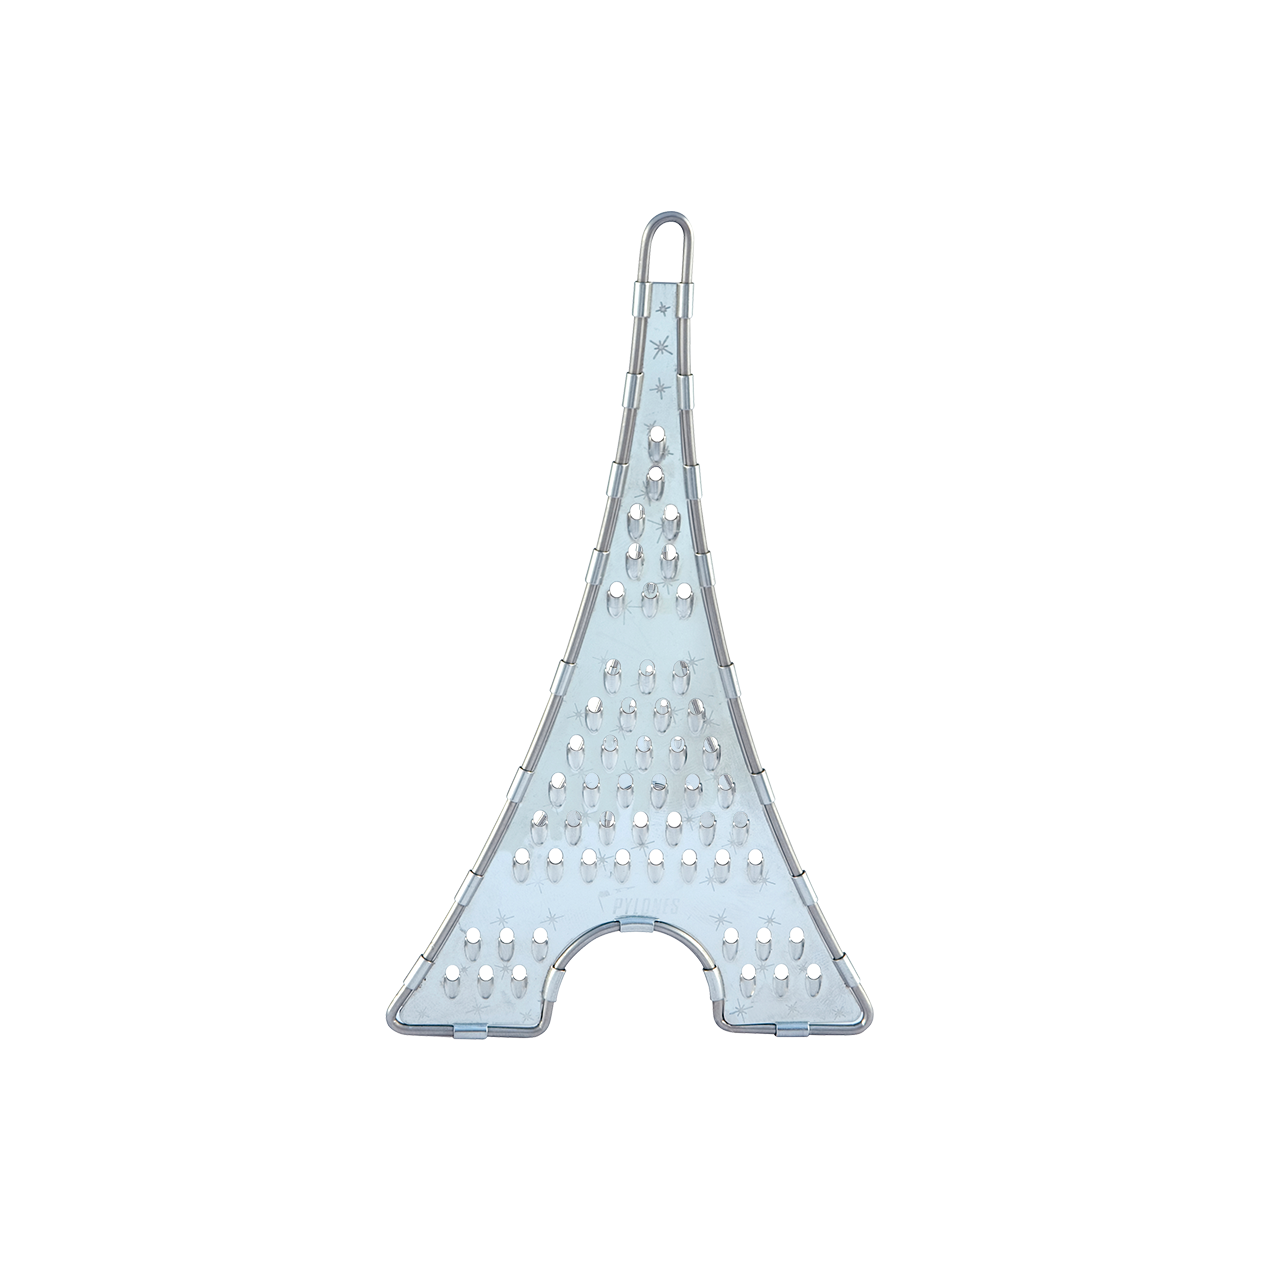 Petite râpe - Râpe Tour Eiffel - Pylones